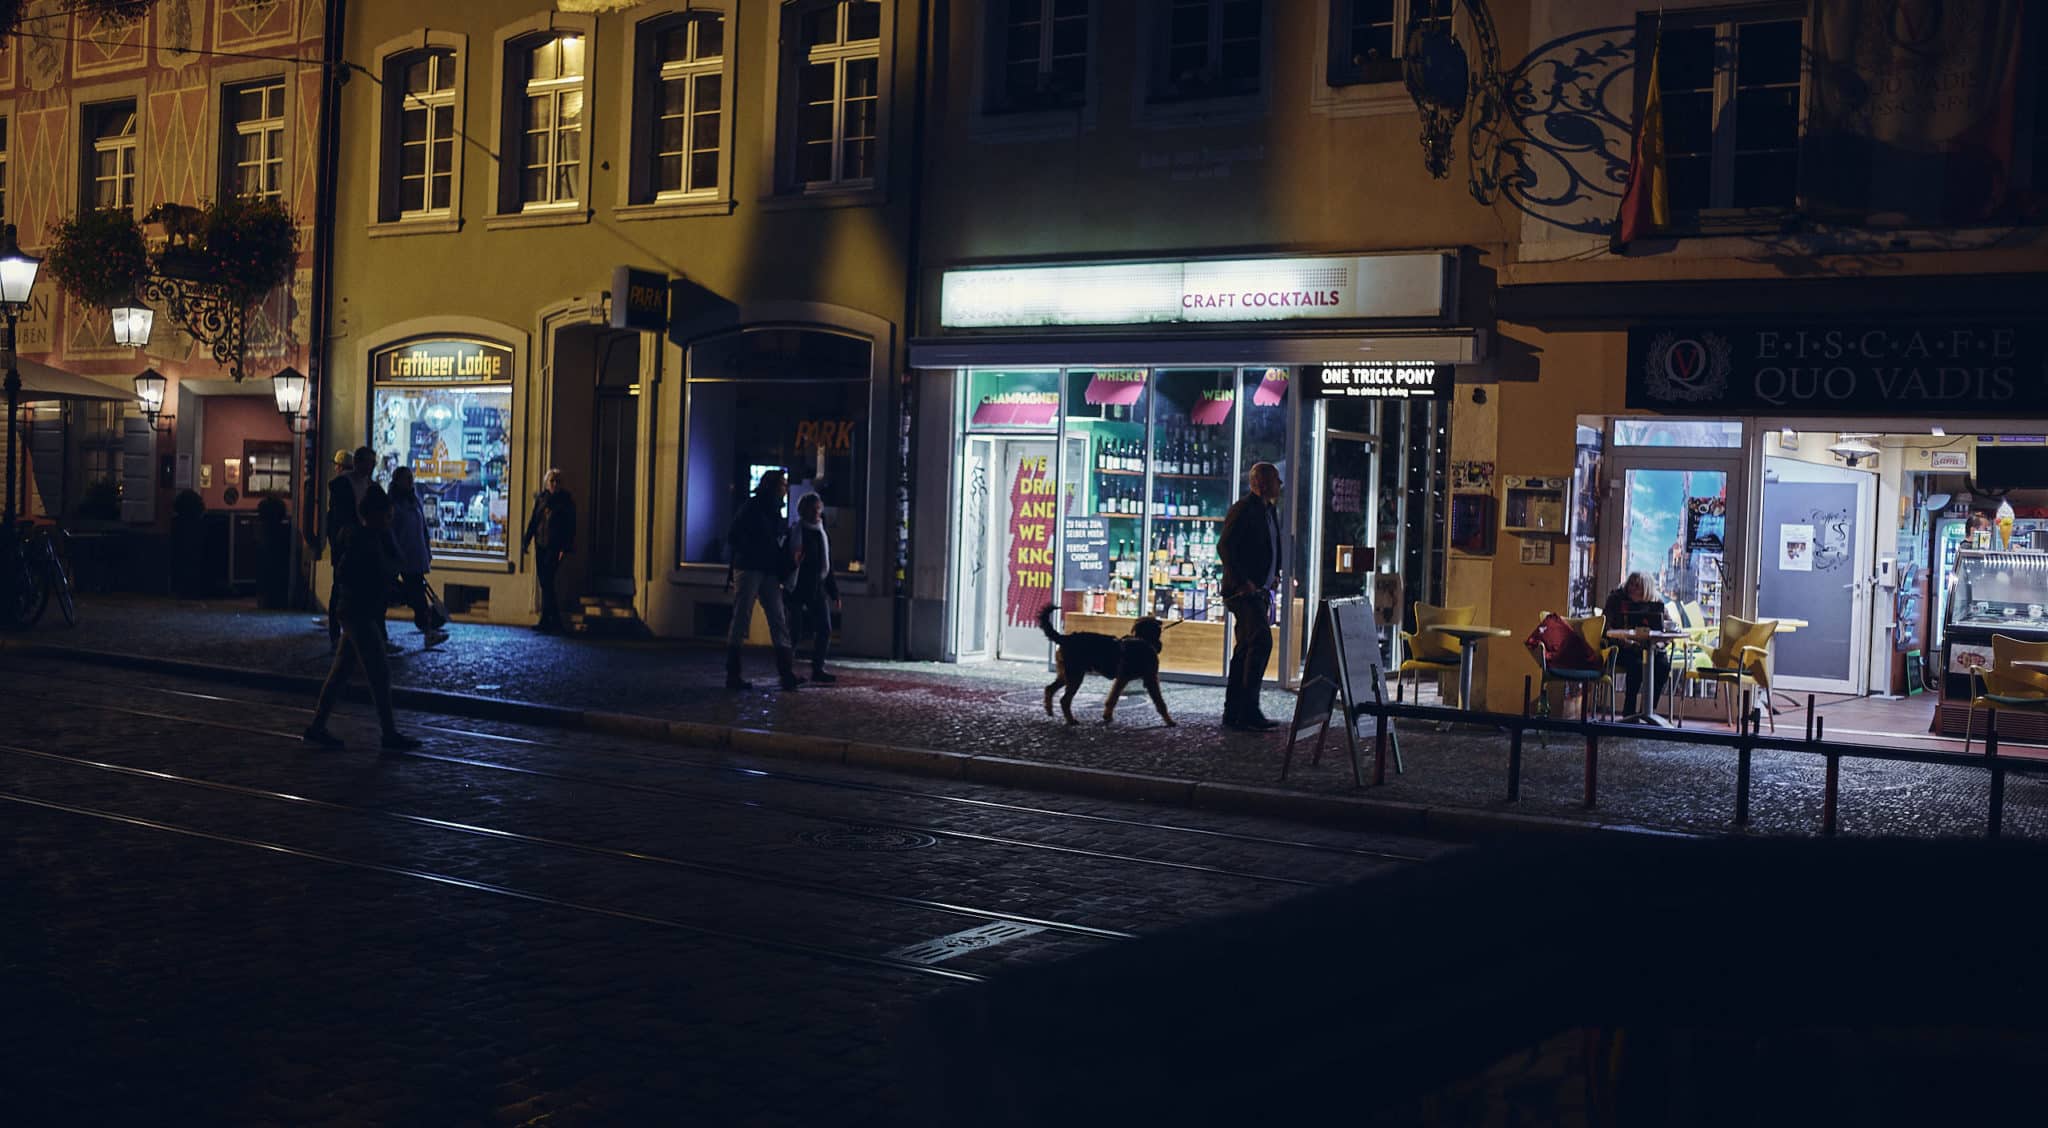 Aussenaufnahme bei nacht vom One Trick Pony in Freiburg.